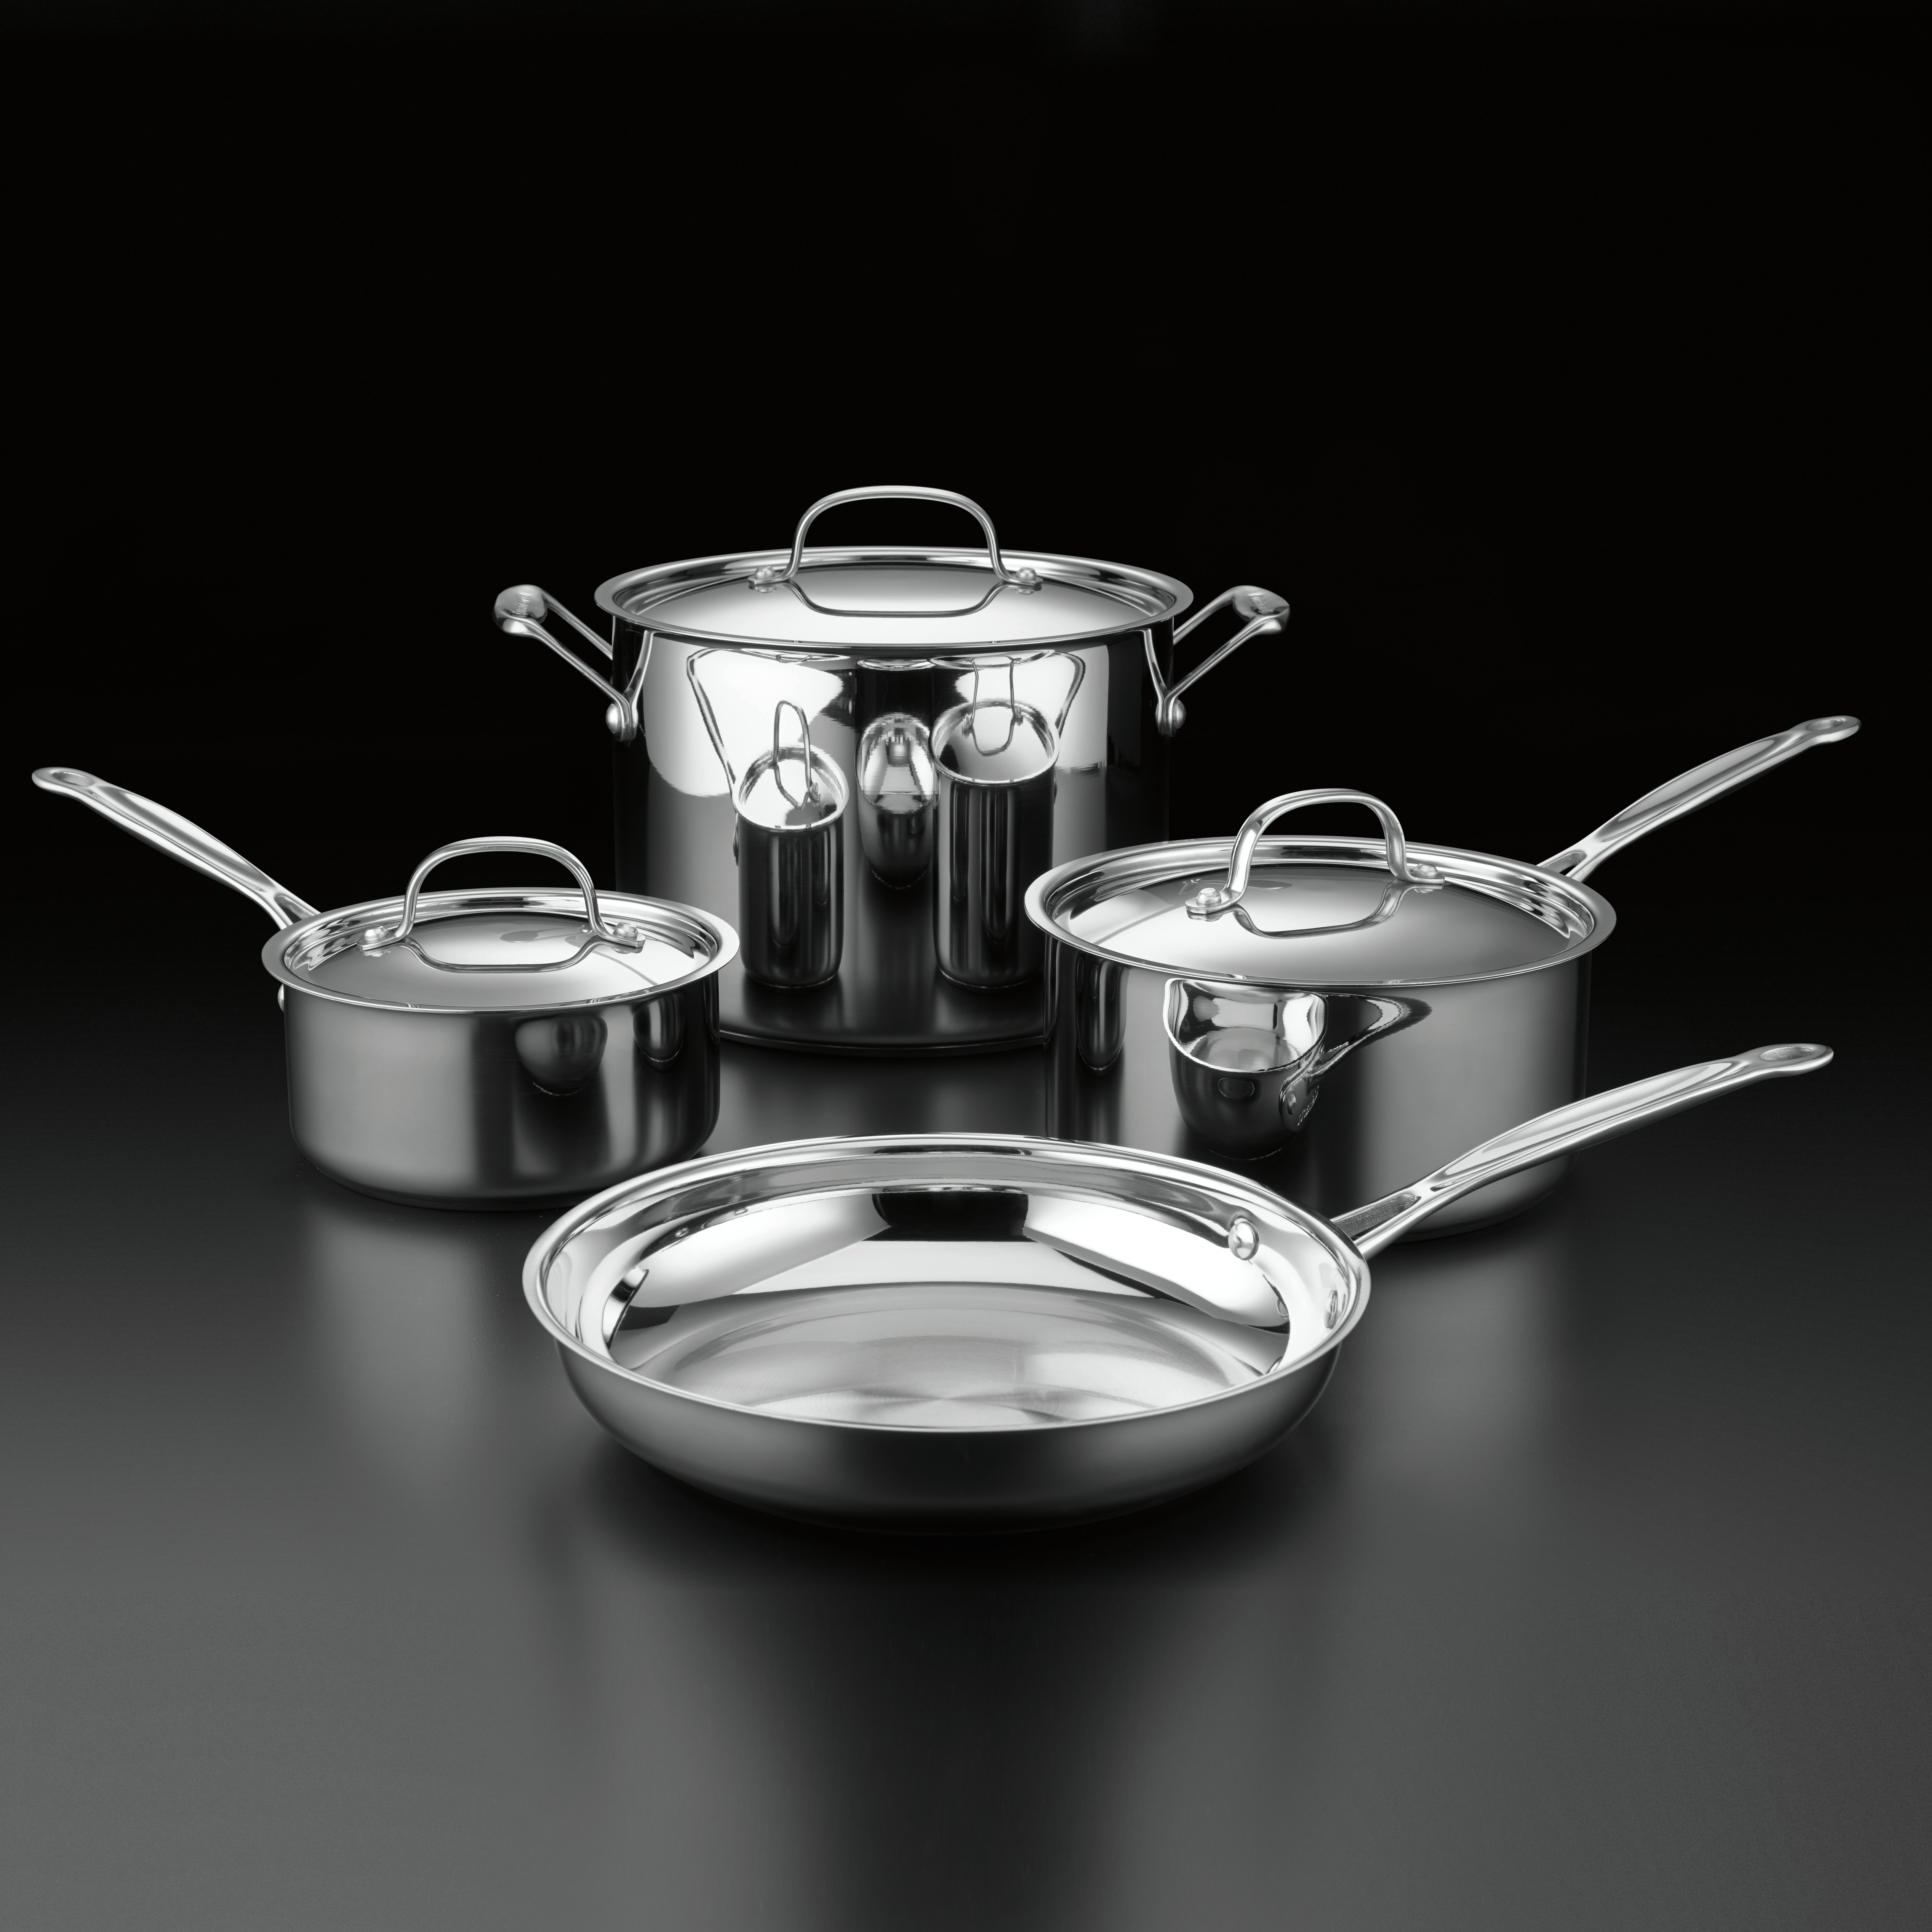 https://assets.wfcdn.com/im/53050617/compr-r85/1251/125118849/cuisinart-chefs-classic-7-piece-stainless-steel-cookware-set.jpg